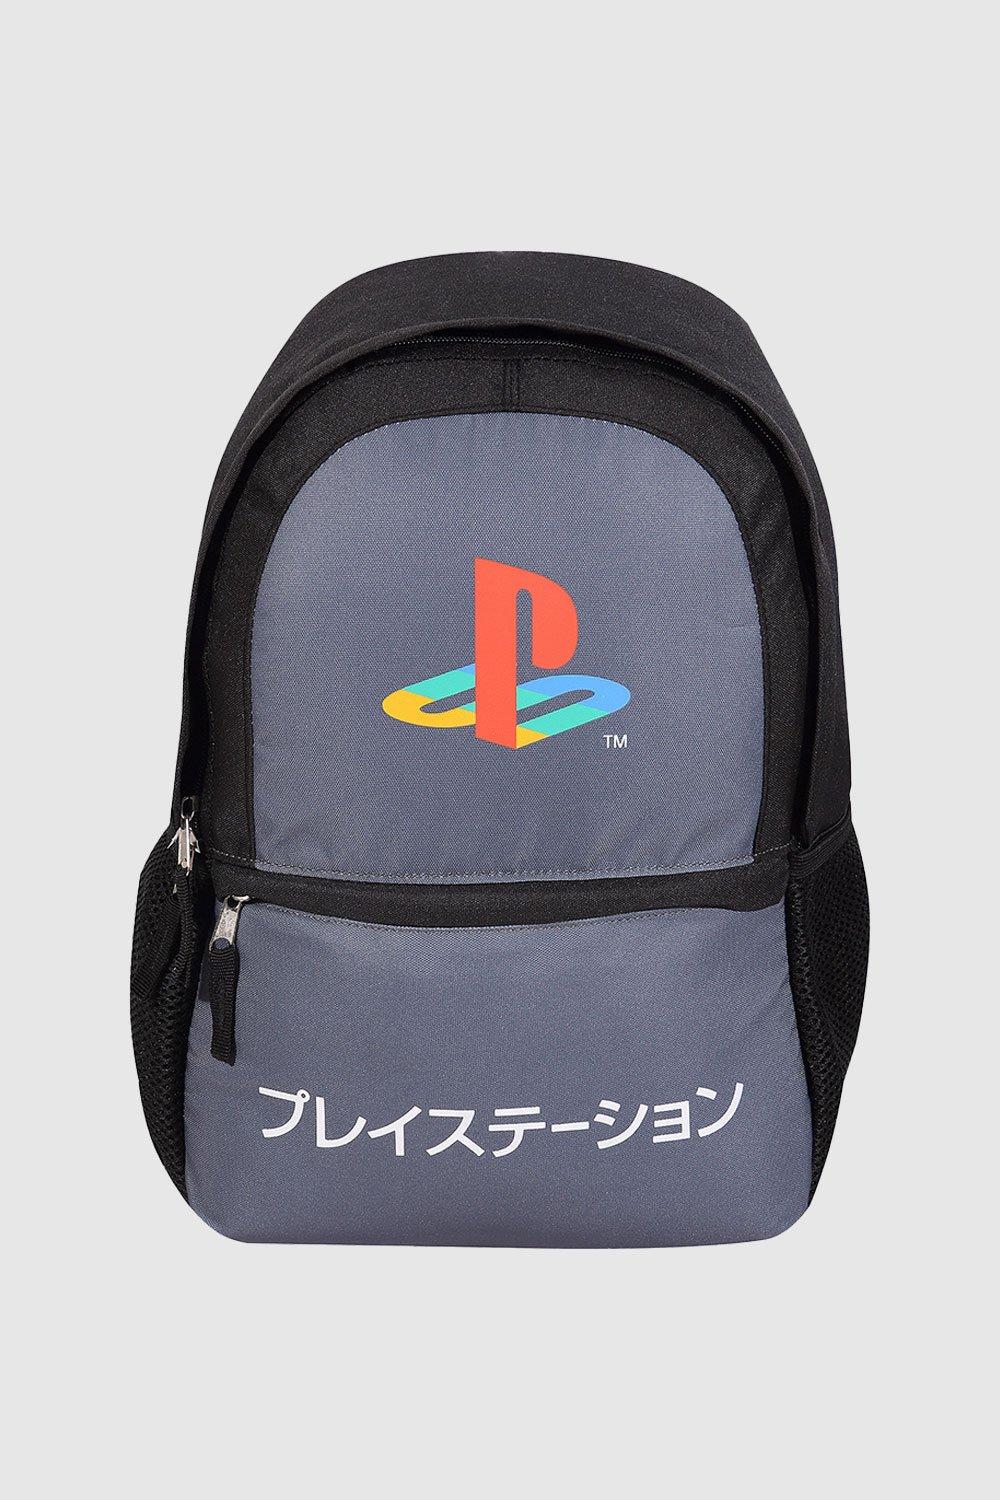 цена Рюкзак с контрастным логотипом Playstation, серый